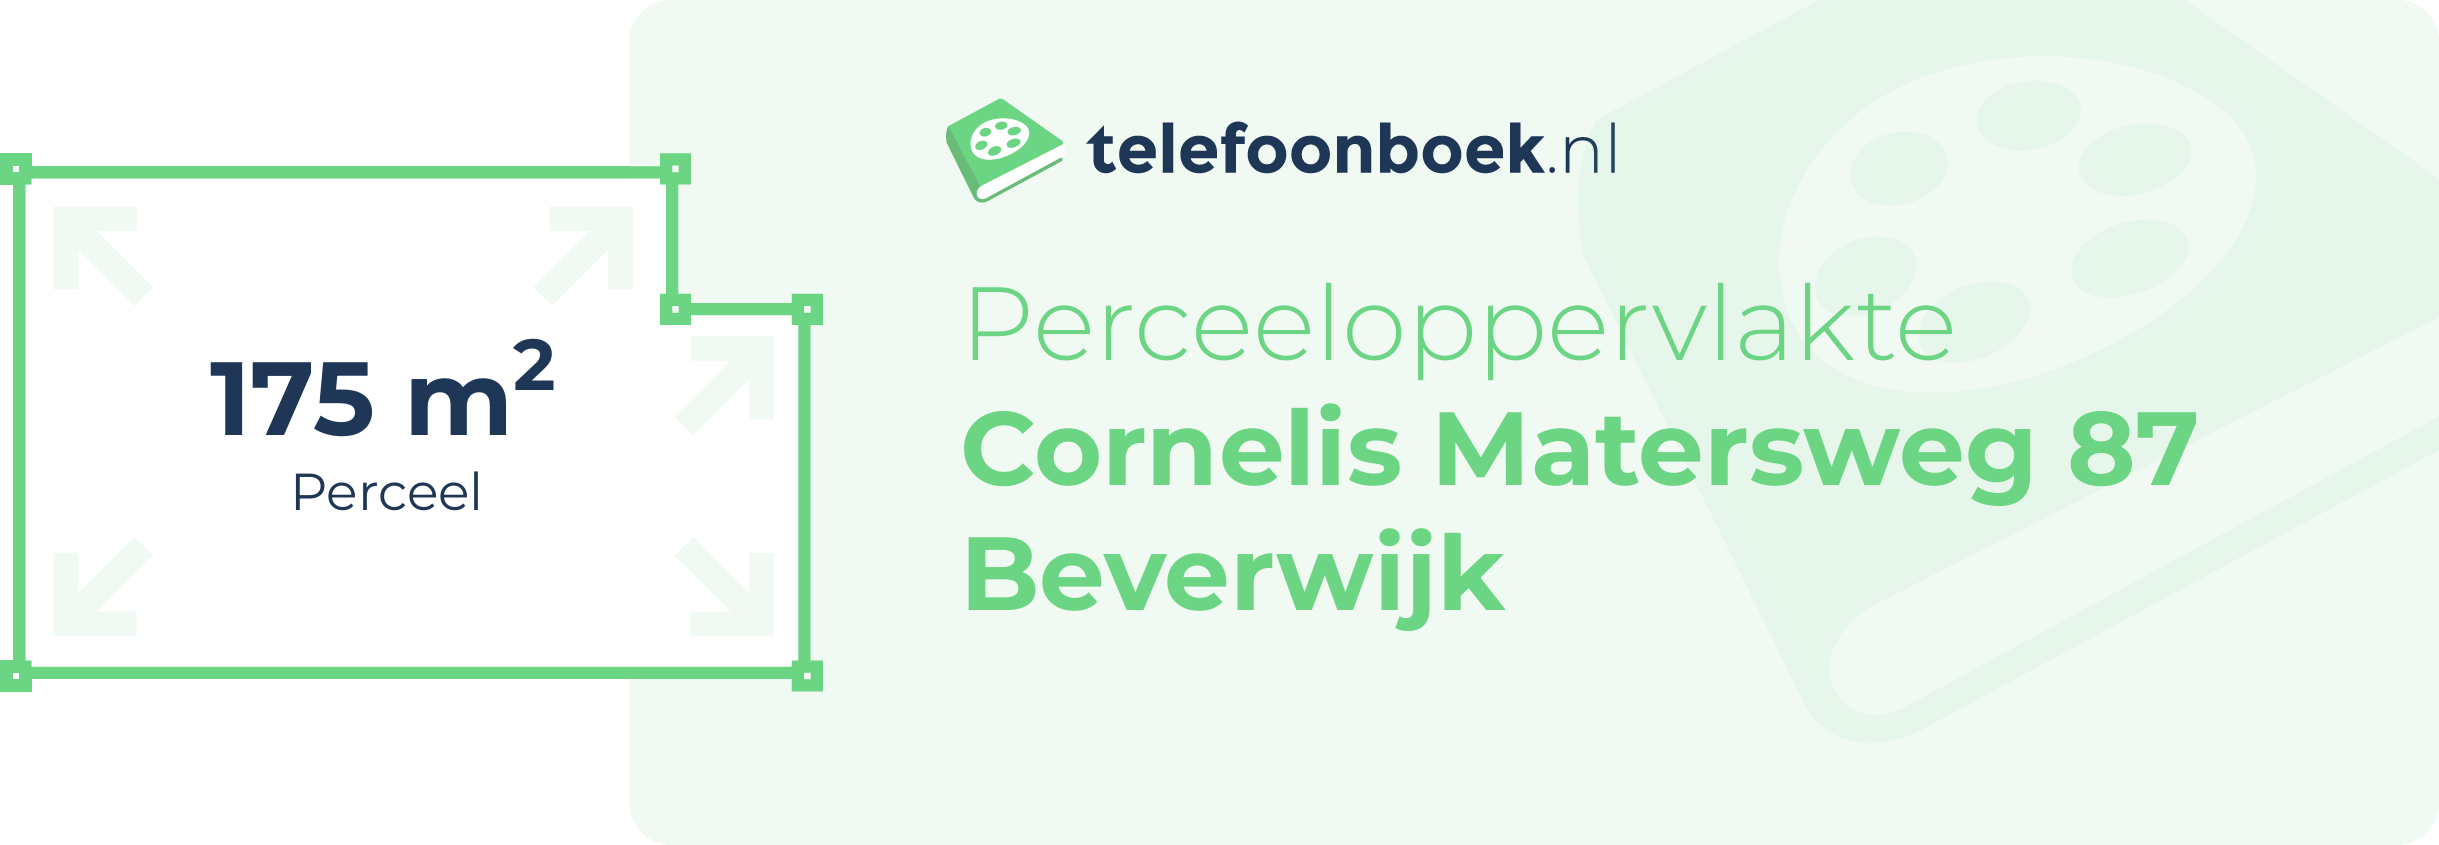 Perceeloppervlakte Cornelis Matersweg 87 Beverwijk